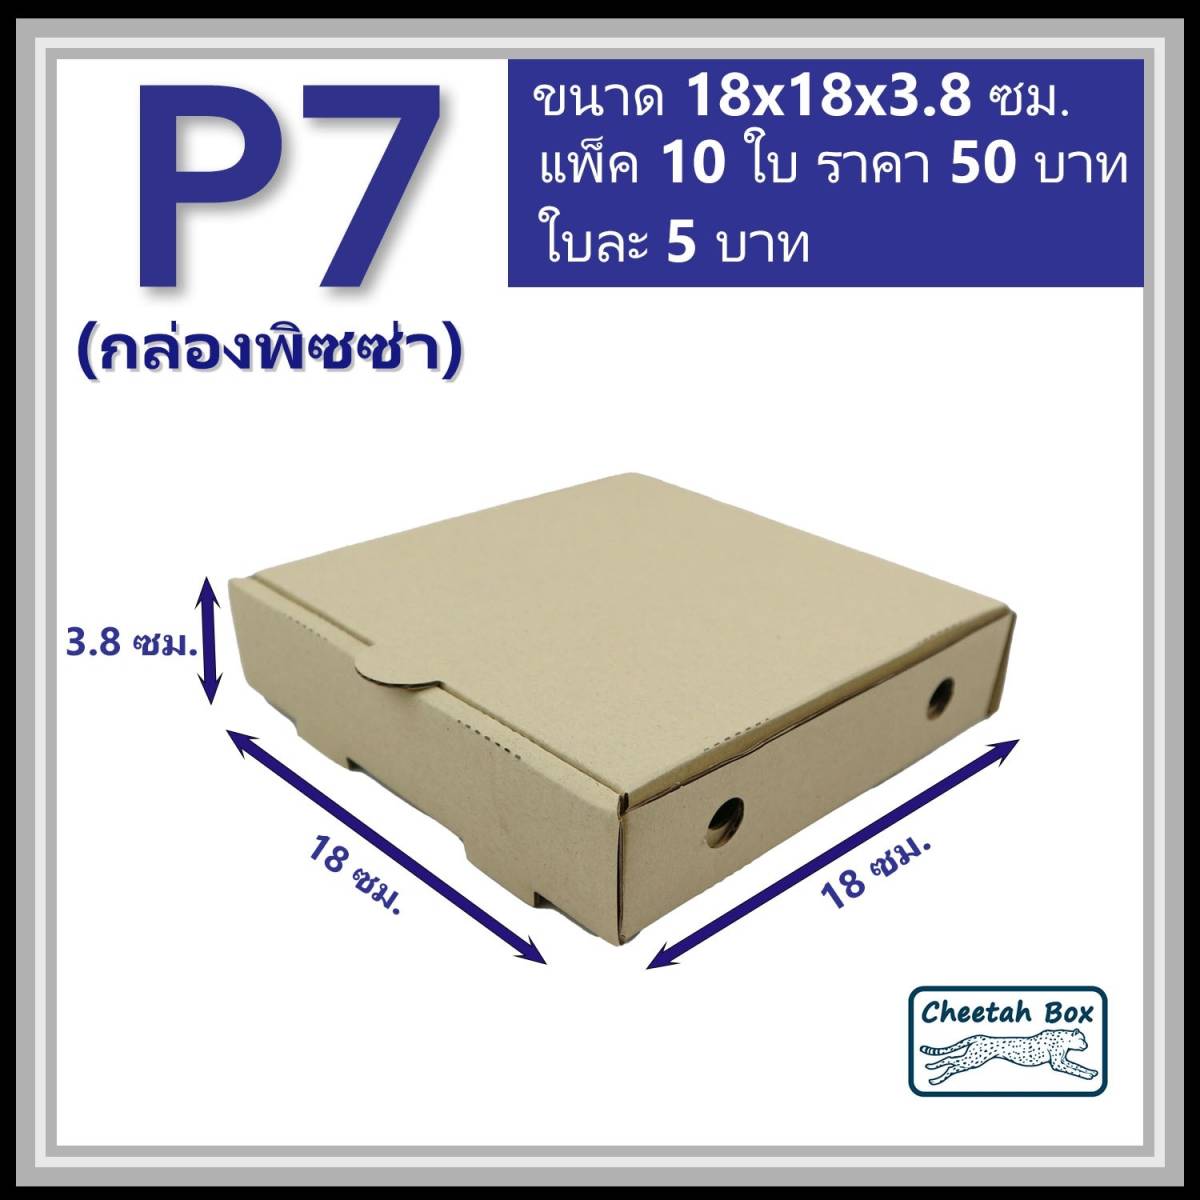 กล่องพิซซ่า 7 นิ้ว รหัส P7 ไม่พิมพ์ (Cheetah Box) 18W x 18L x 3.8H cm.